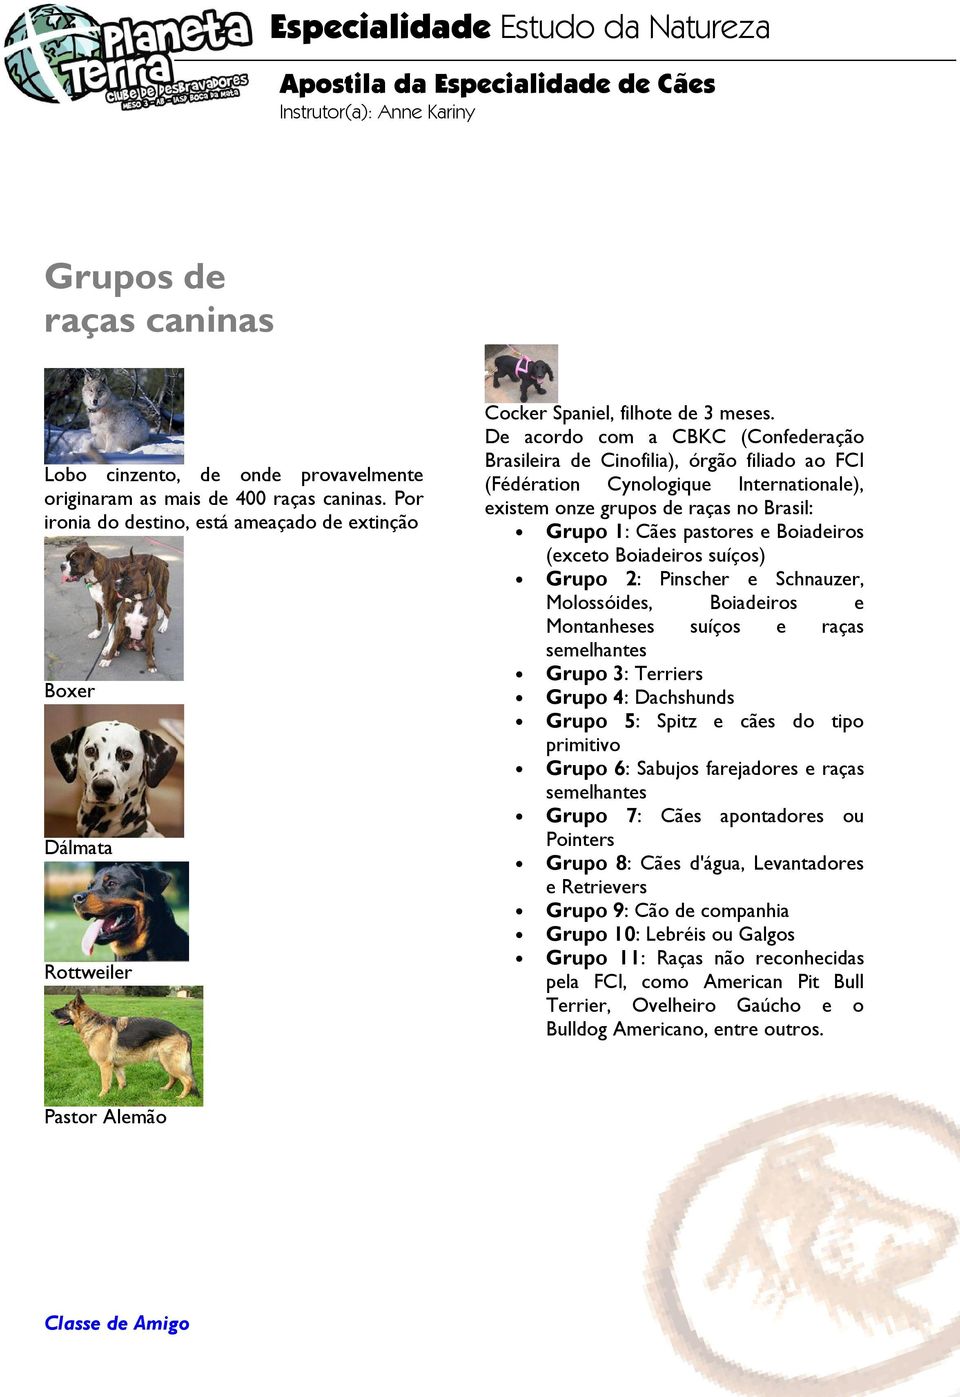 De acordo com a CBKC (Confederação Brasileira de Cinofilia), órgão filiado ao FCI (Fédération Cynologique Internationale), existem onze grupos de raças no Brasil: Grupo 1: Cães pastores e Boiadeiros